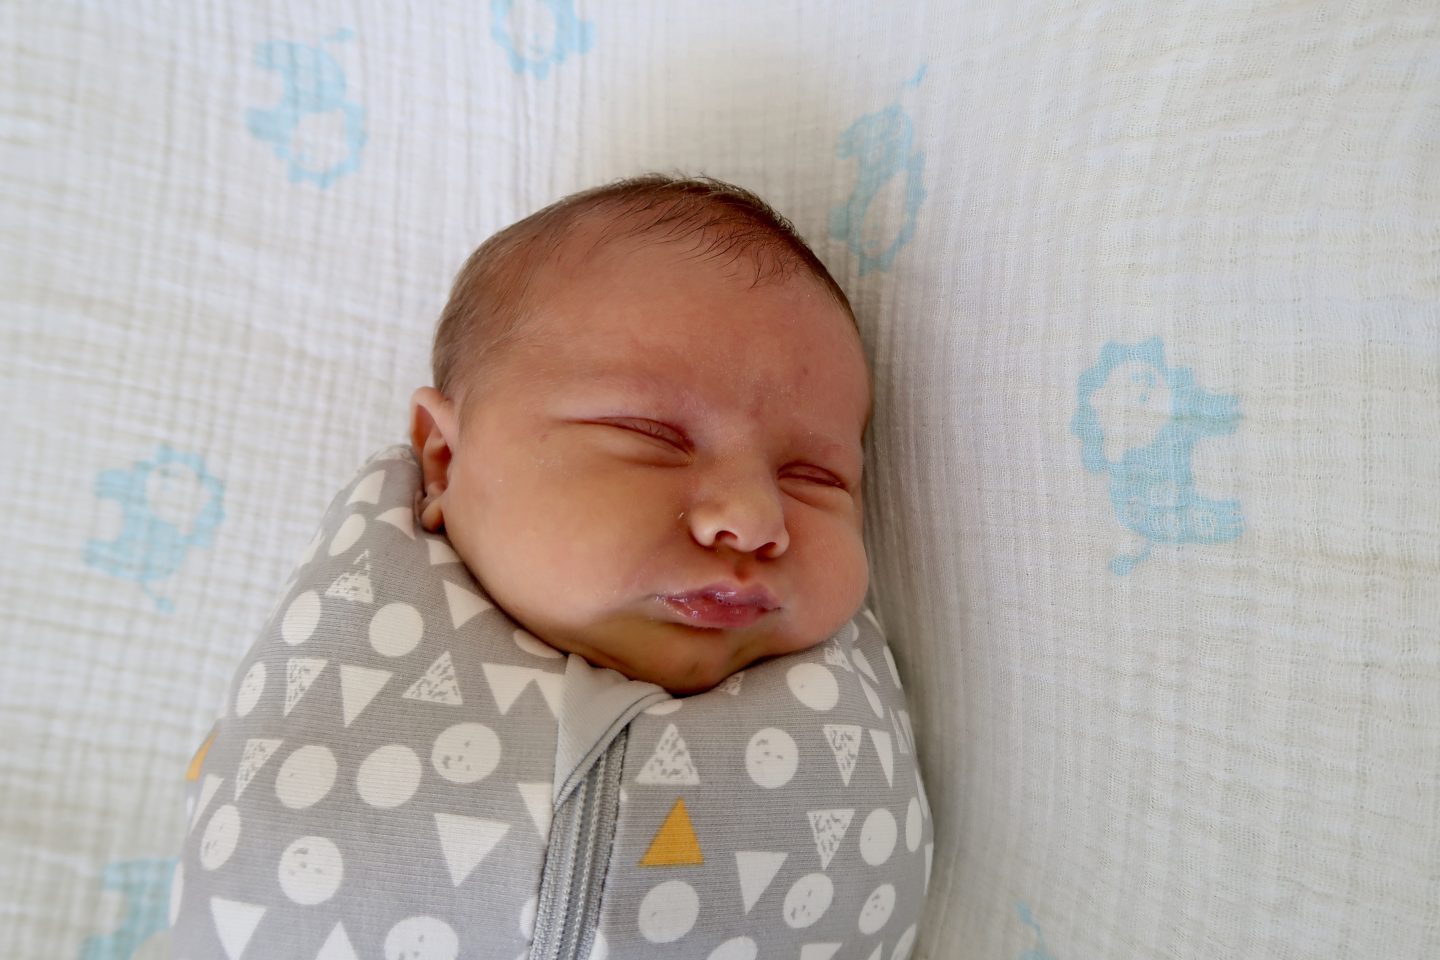 JJ at 1 month old | JJ In Cocoon https://oddhogg.com